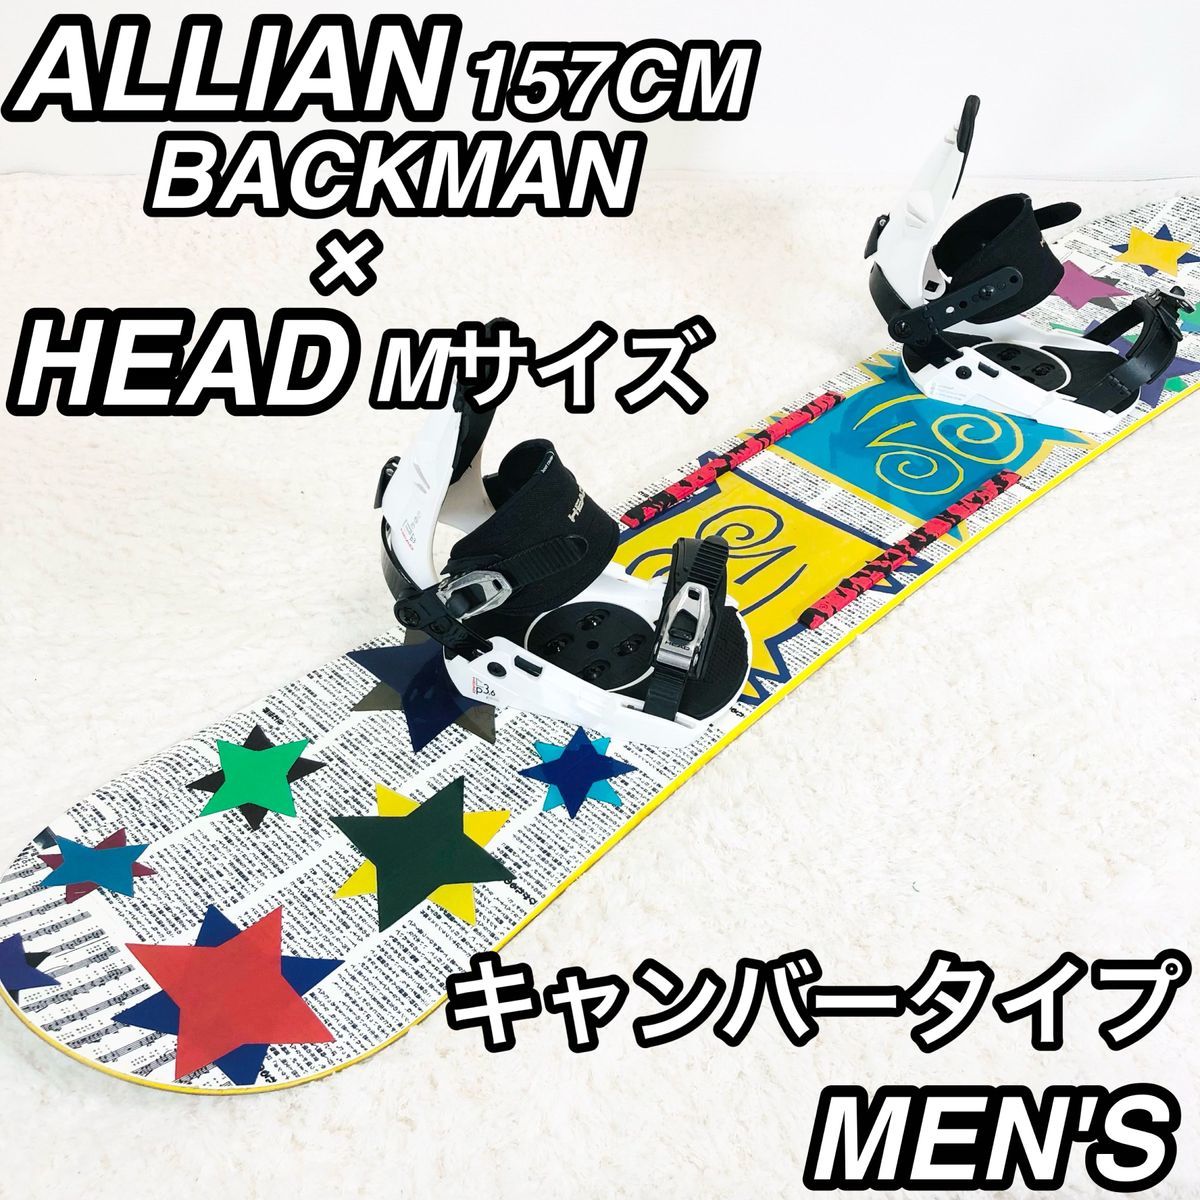 初心者おすすめ ALLIAN スノーボードセット 157cm グラトリ アライアン スノボ HEAD ヘッド ２点 キャンバータイプ BACKMAN バックマン